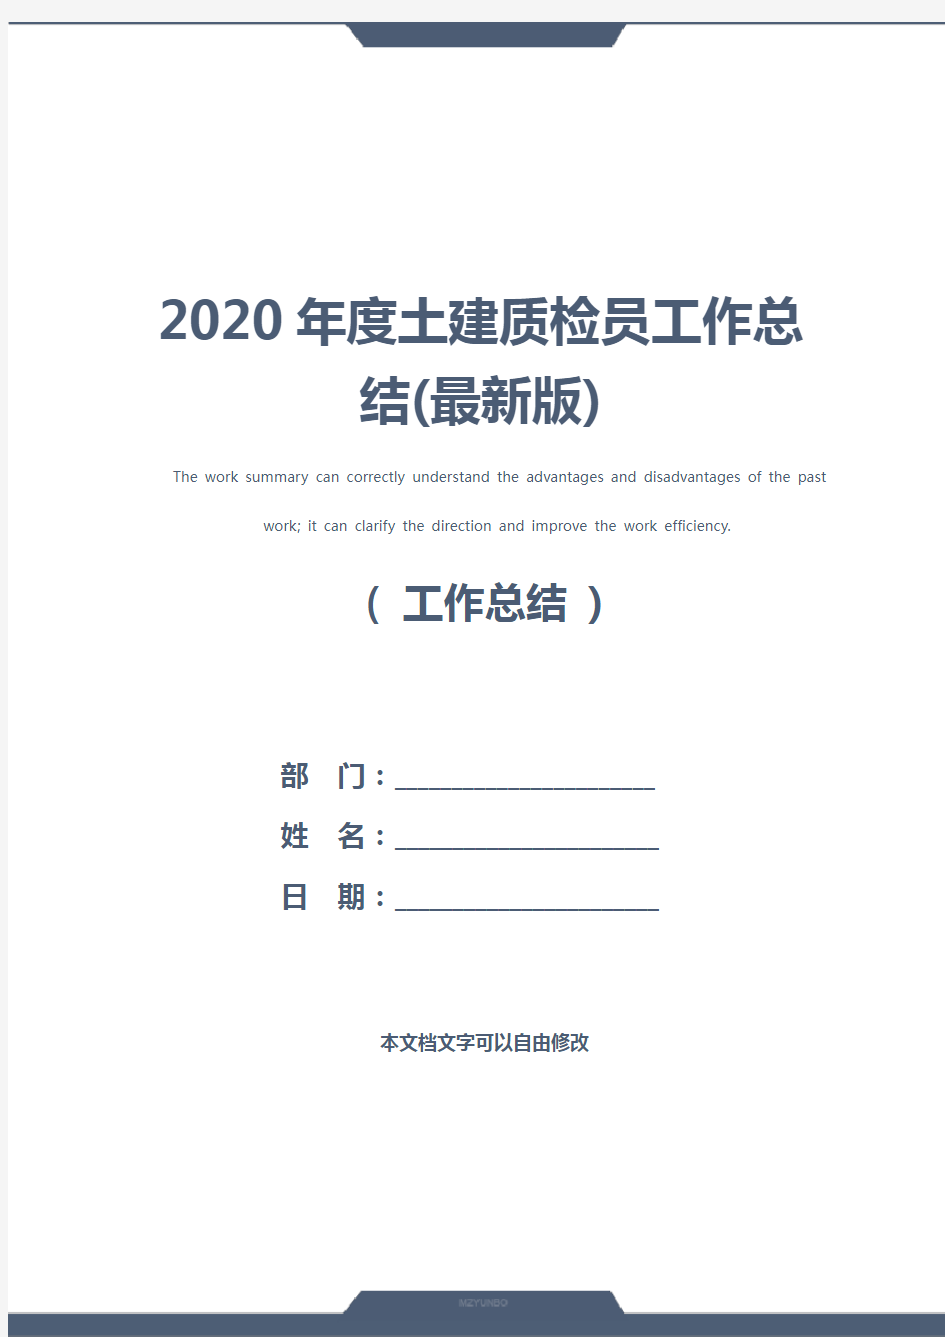 2020年度土建质检员工作总结(最新版)